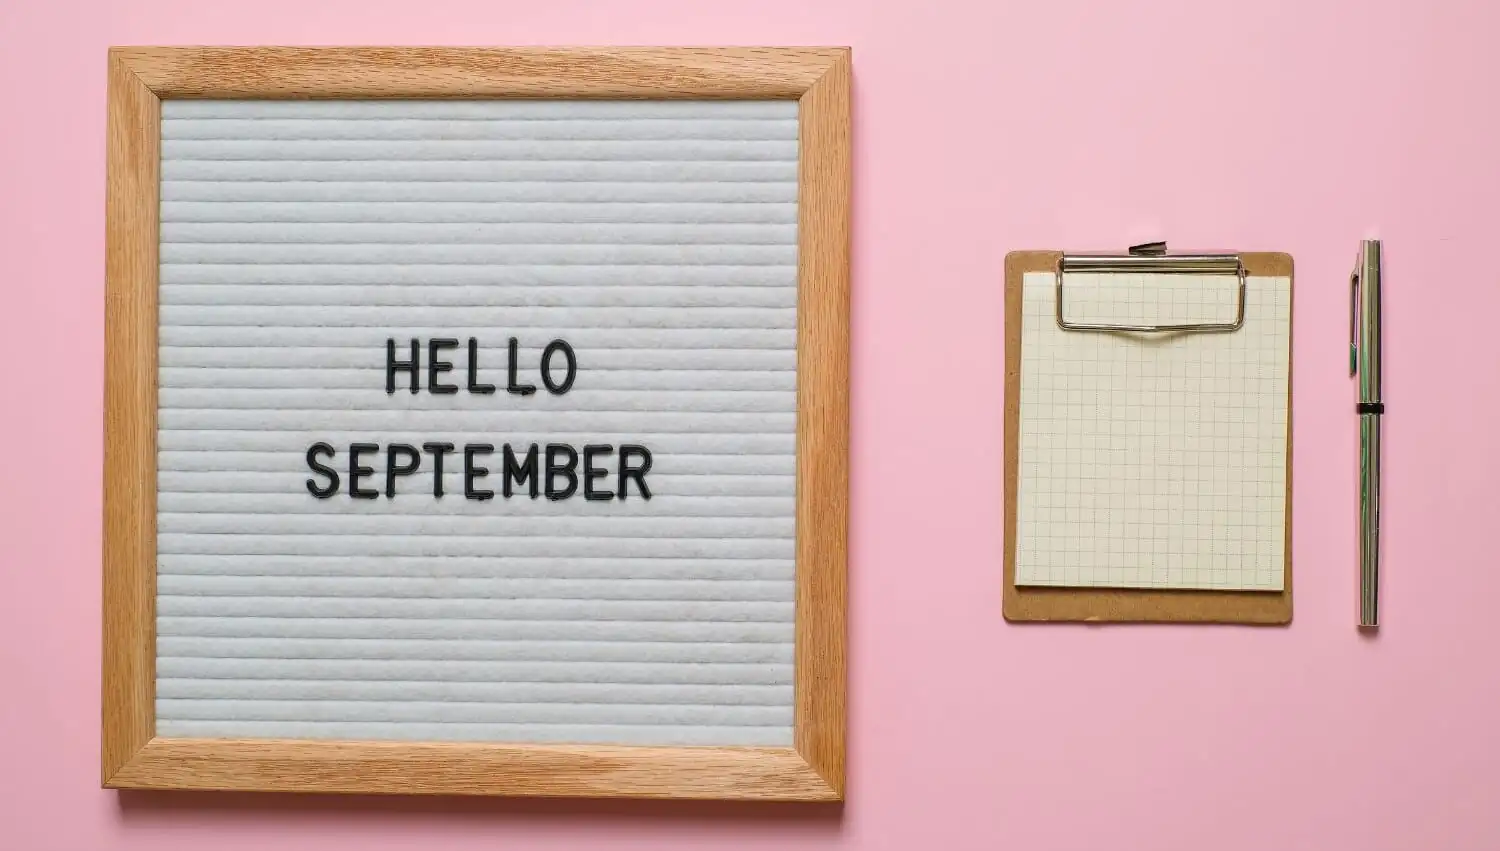 La llegada del mes de septiembre lleva implícito para muchas personas el inicio de nuevas etapas académicas o profesionales